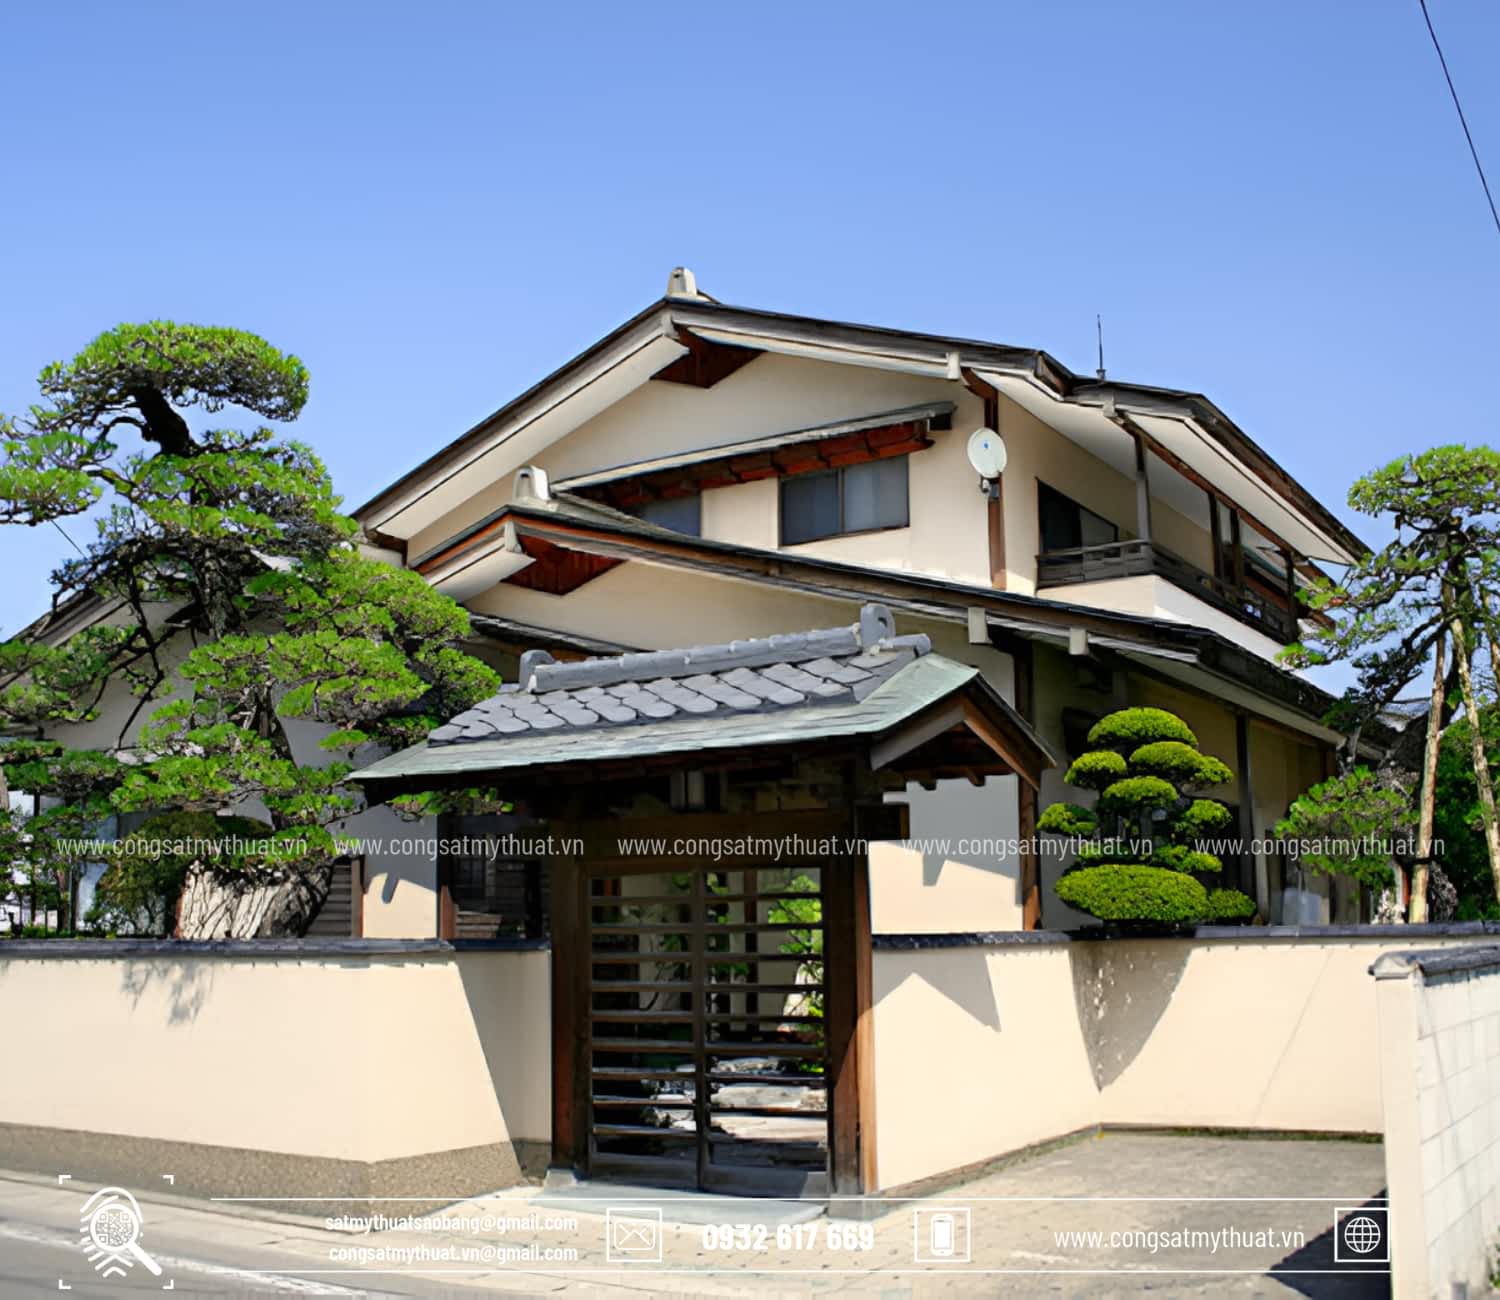 Mẫu cổng nhà mái Nhật tân cổ điển đơn giản